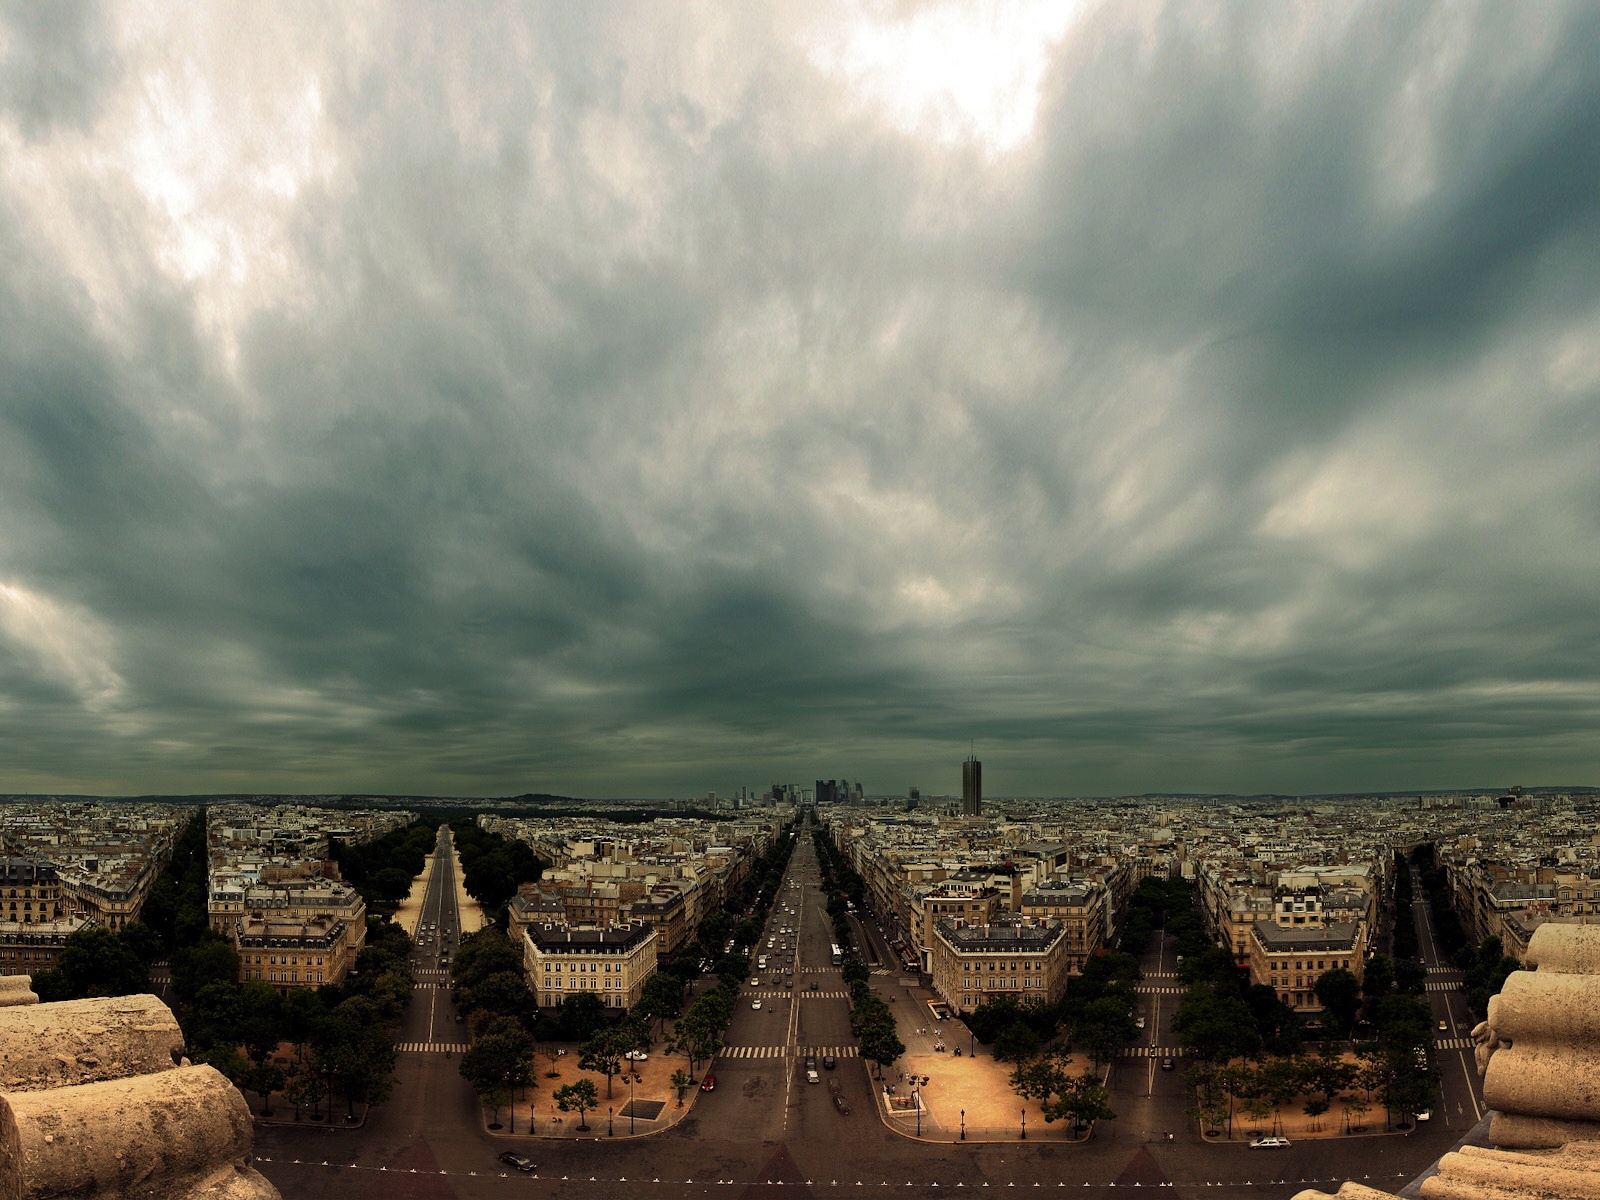 Fond d'ecran Boulevards parisiens